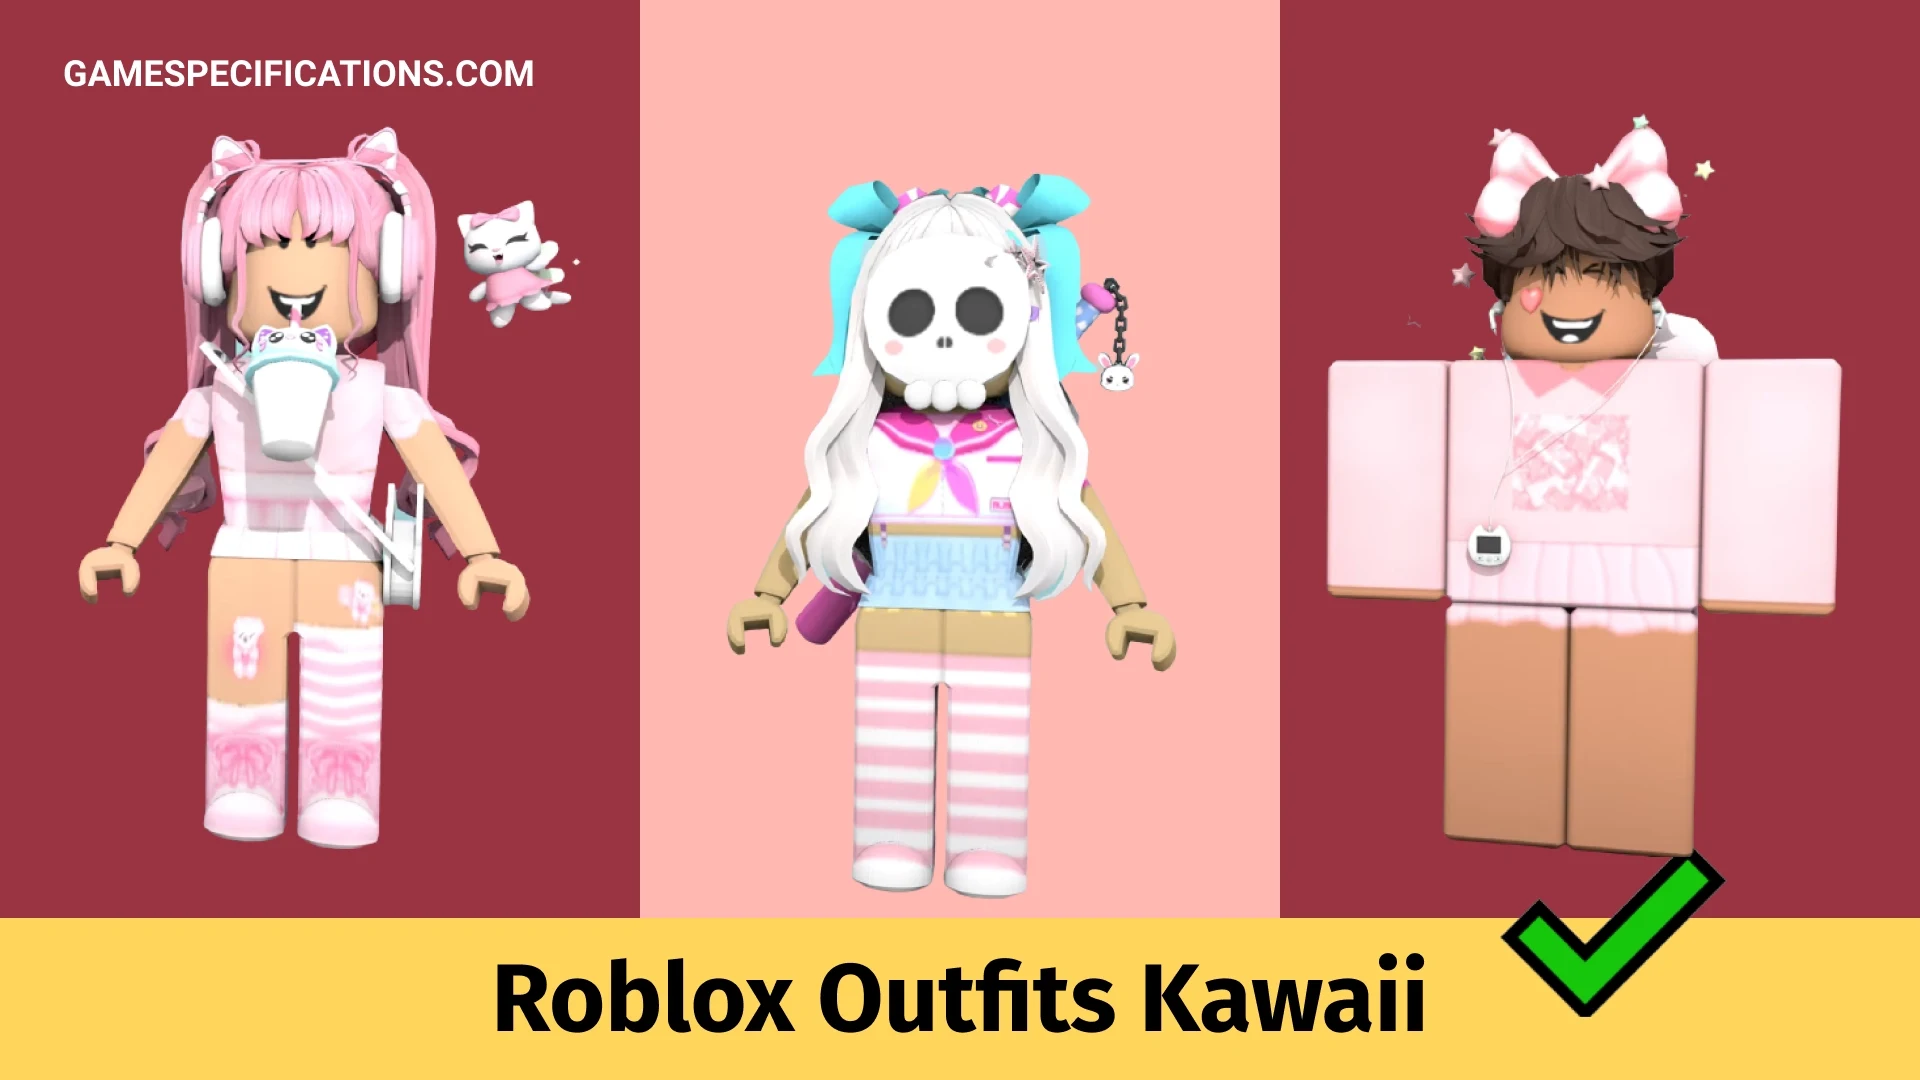 Nếu bạn đang tìm kiếm ý tưởng về trang phục kawaii cho avatar của mình trong Roblox, hãy xem qua bài viết mới nhất của chúng tôi. Chúng tôi đã tìm kiếm và sưu tập những ý tưởng tuyệt vời để giúp bạn tạo ra một bộ trang phục kawaii và độc đáo.